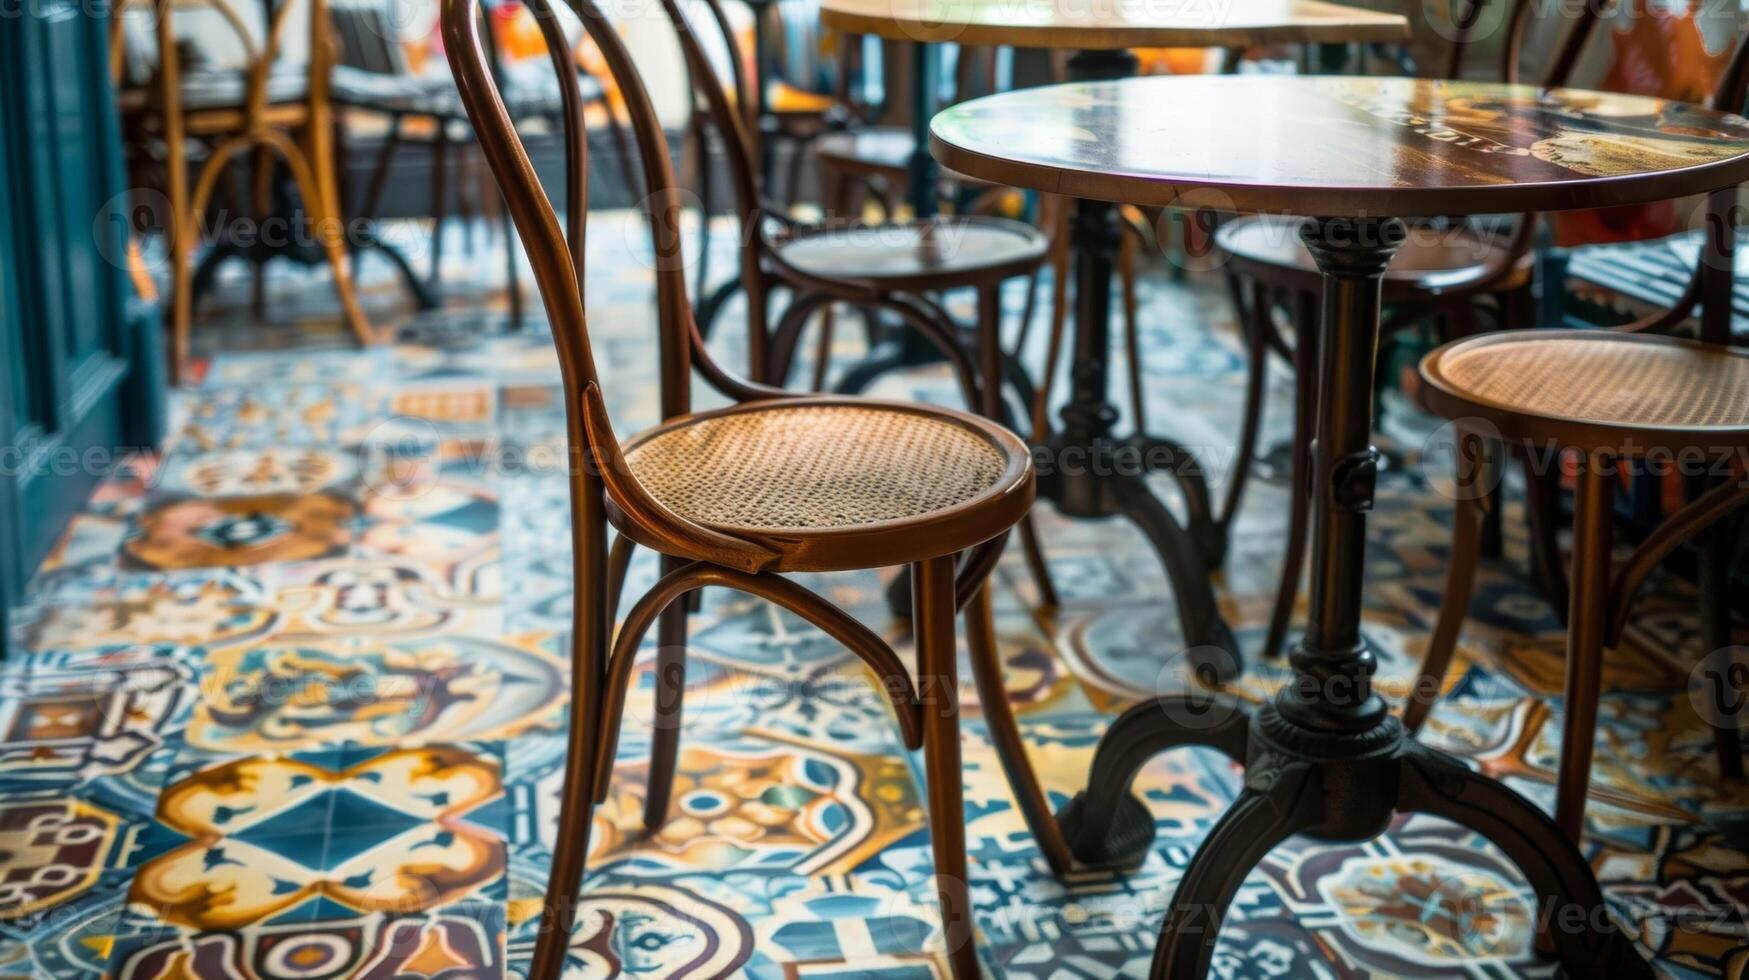 une charmant café avec une sol orné dans un assortiment de peinte à la main céramique carrelage création une confortable et attrayant atmosphère. photo